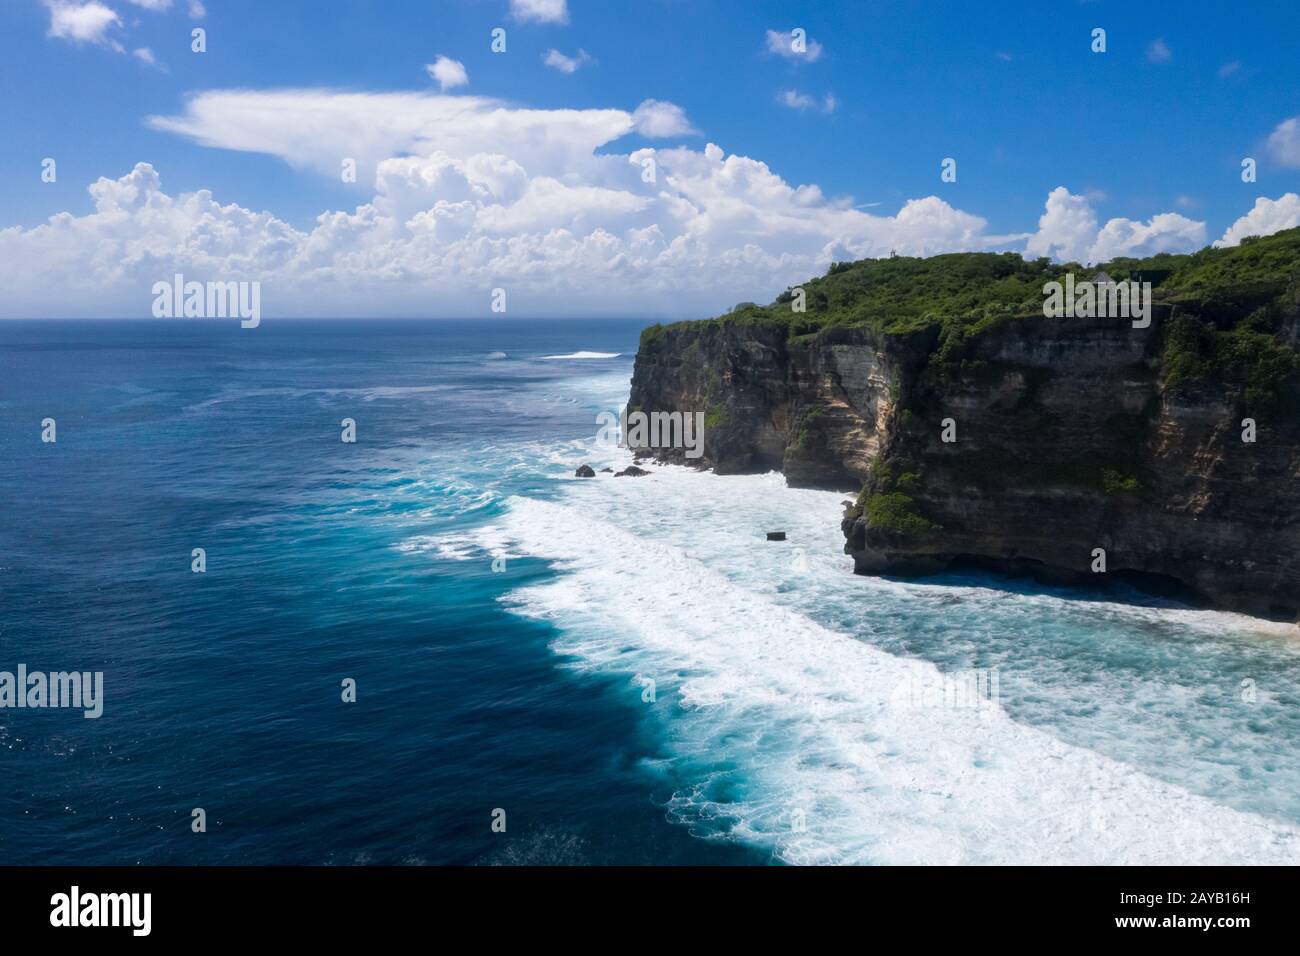 uluwatu cliff of bali island landscape Stock Photo